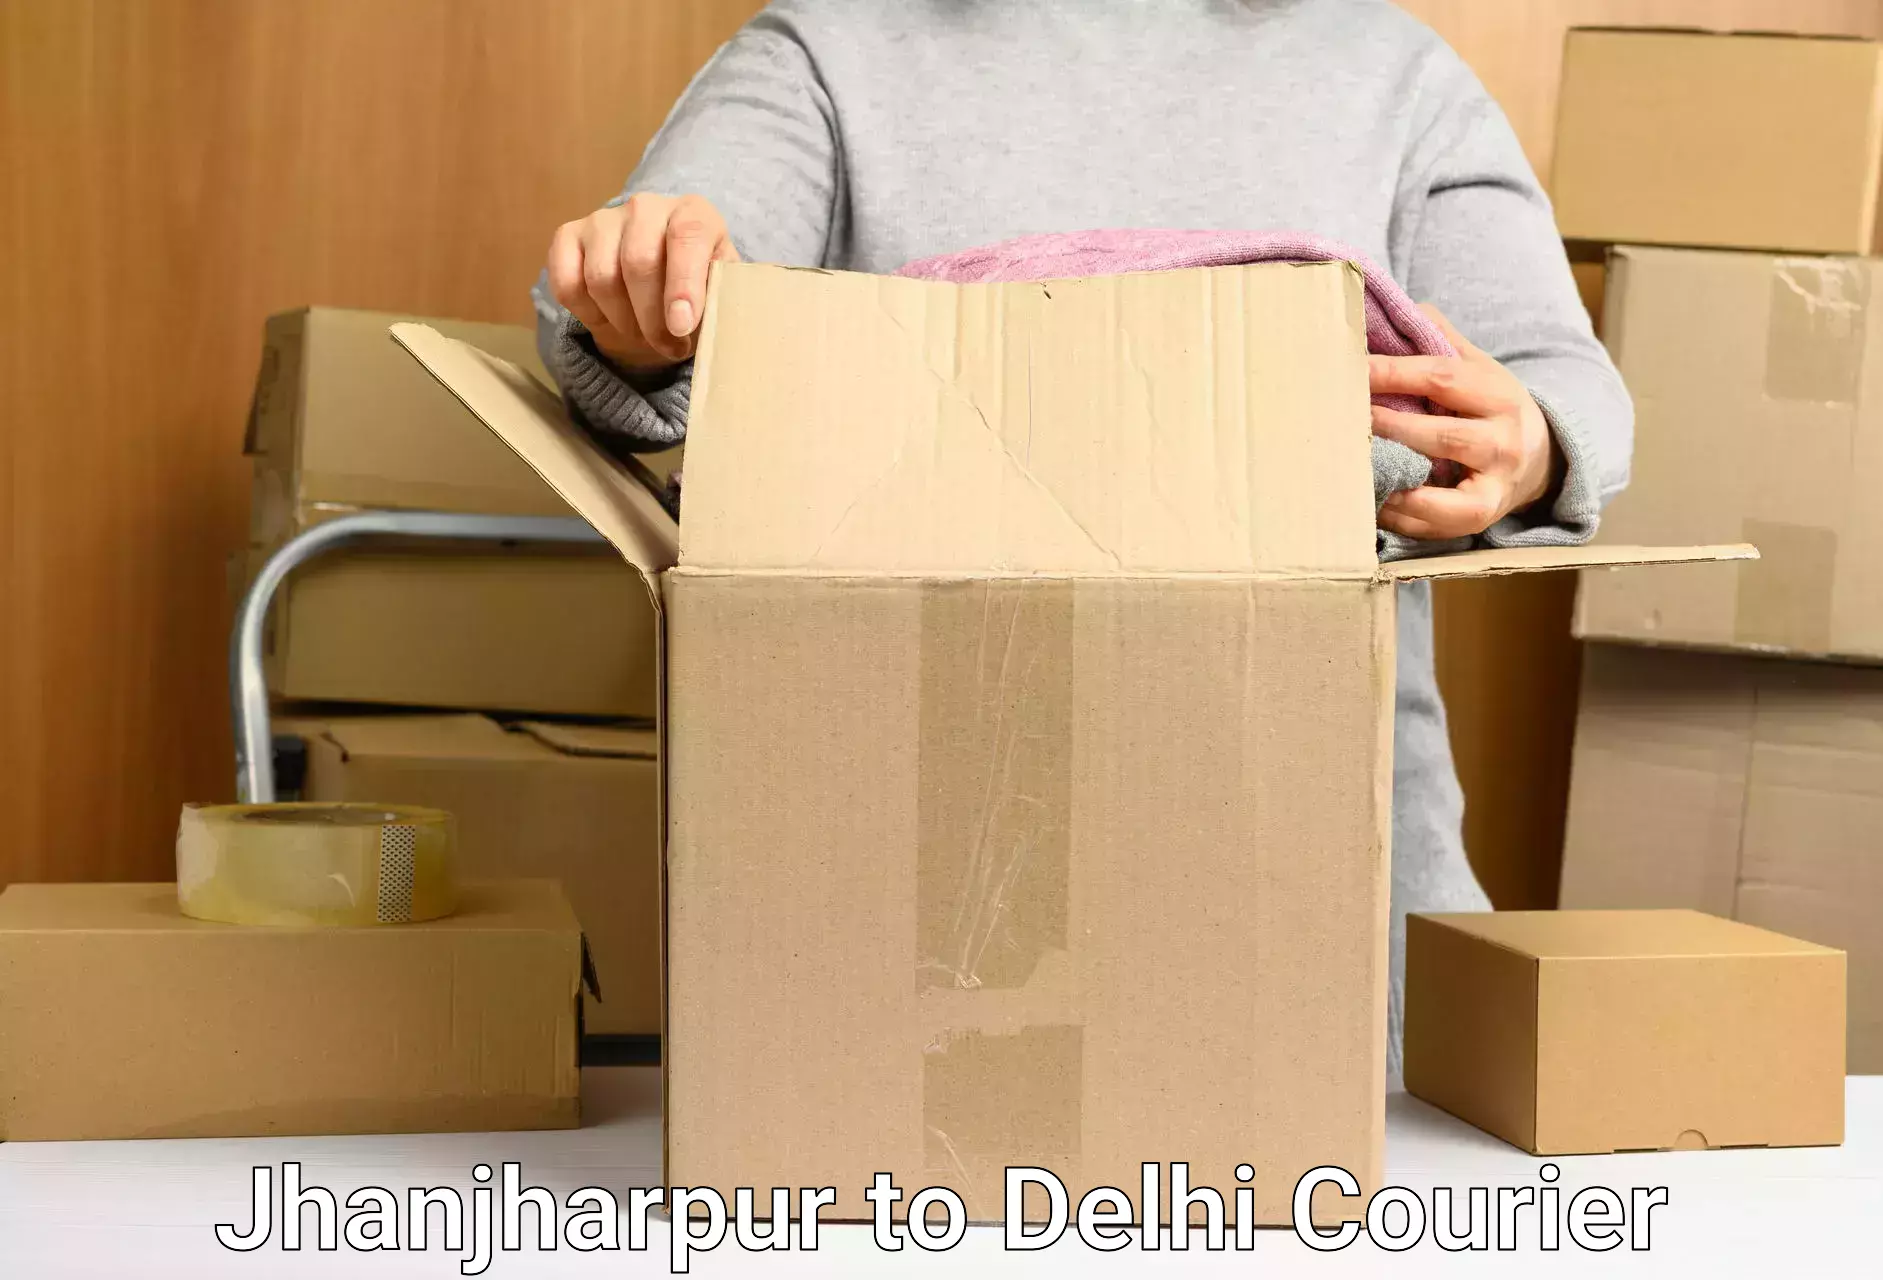 Regular parcel service Jhanjharpur to NIT Delhi